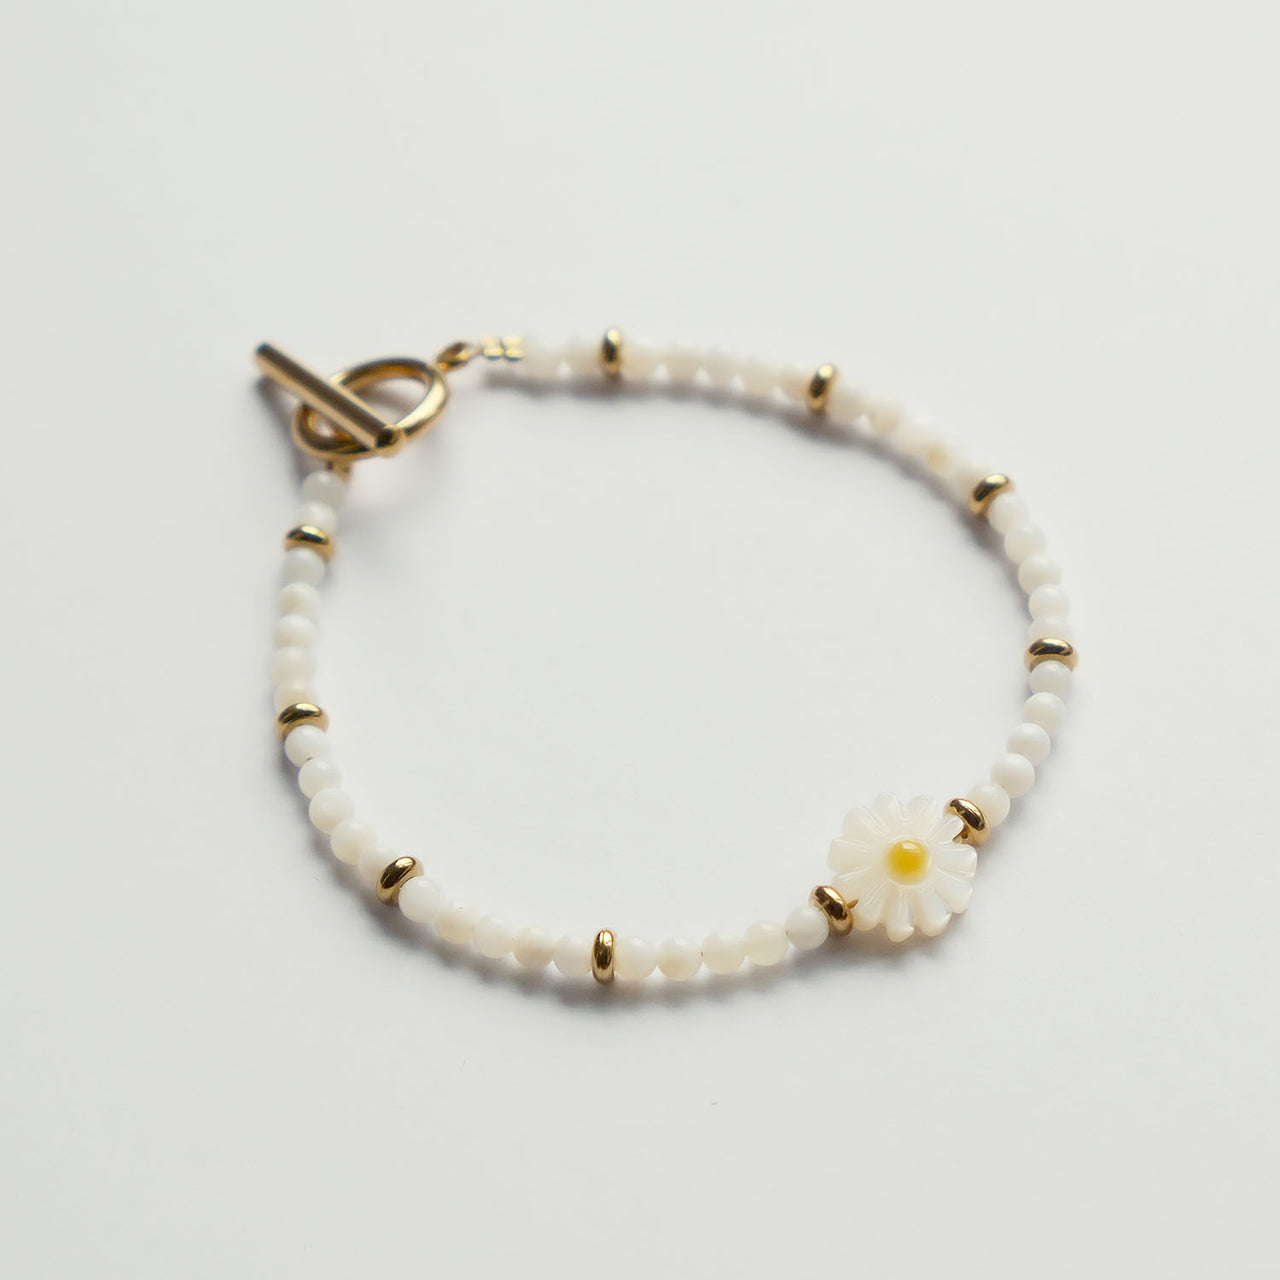 Daisy White Beads Bracelet